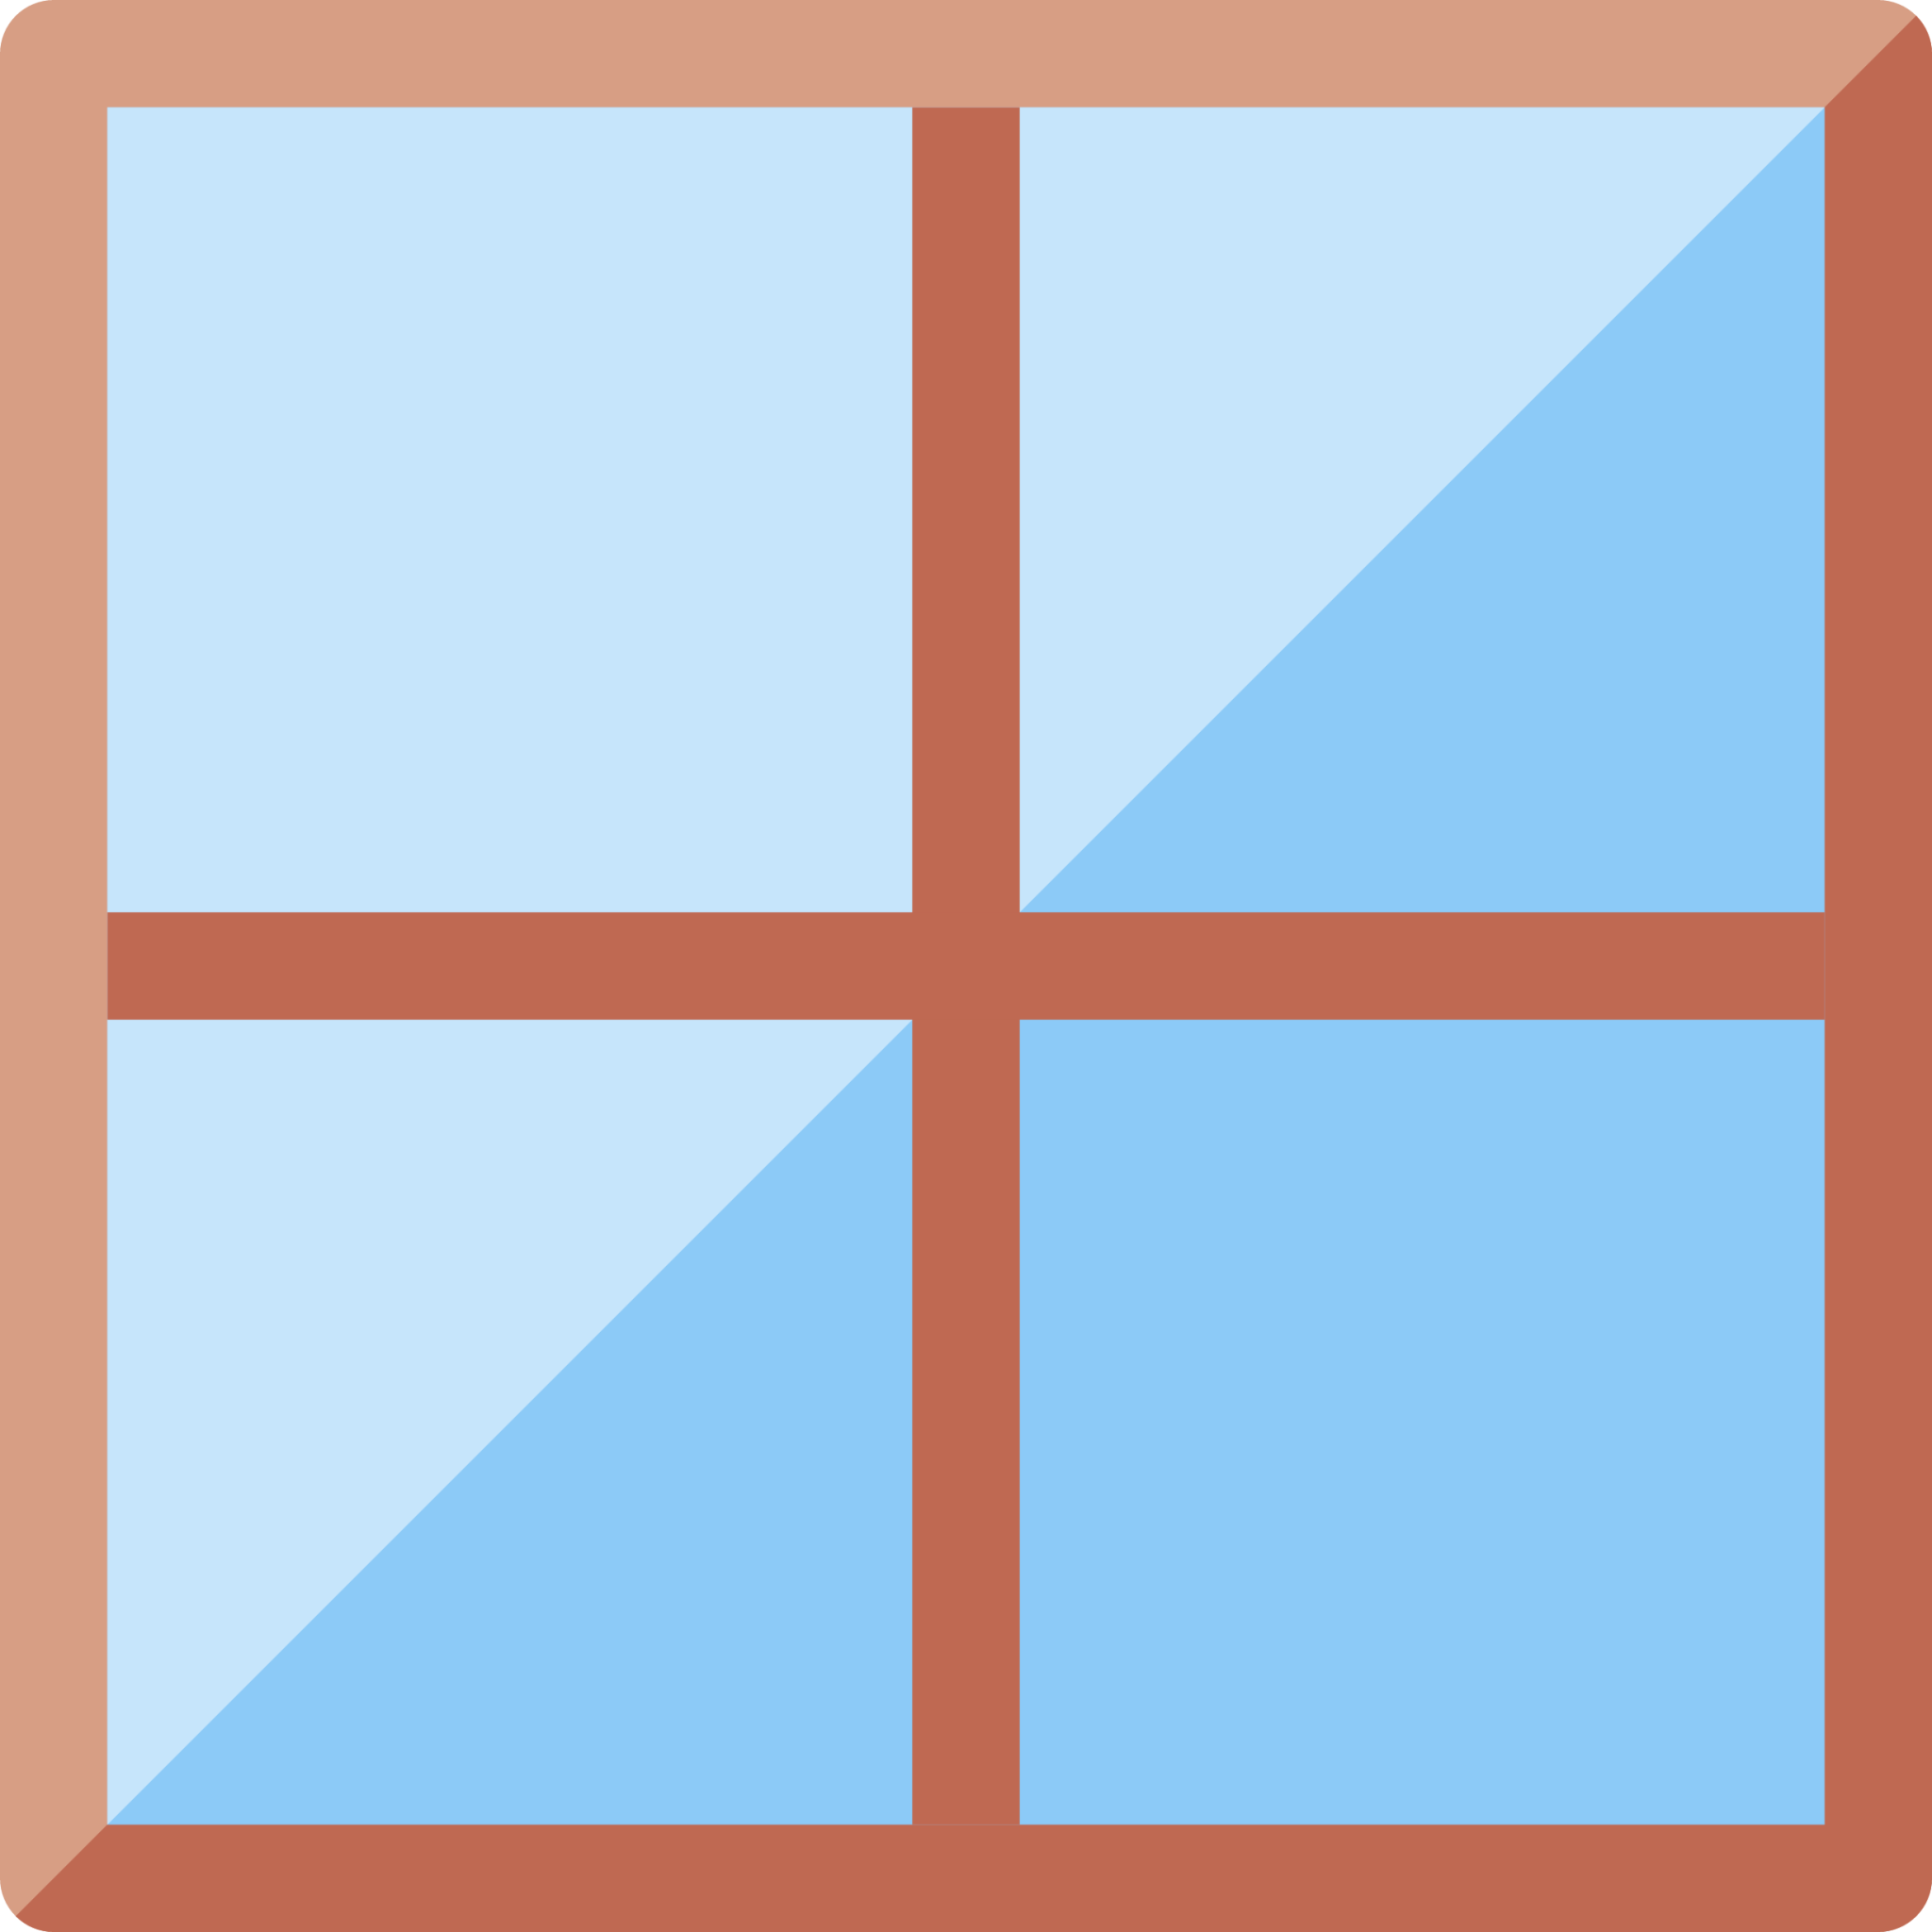 window emoji